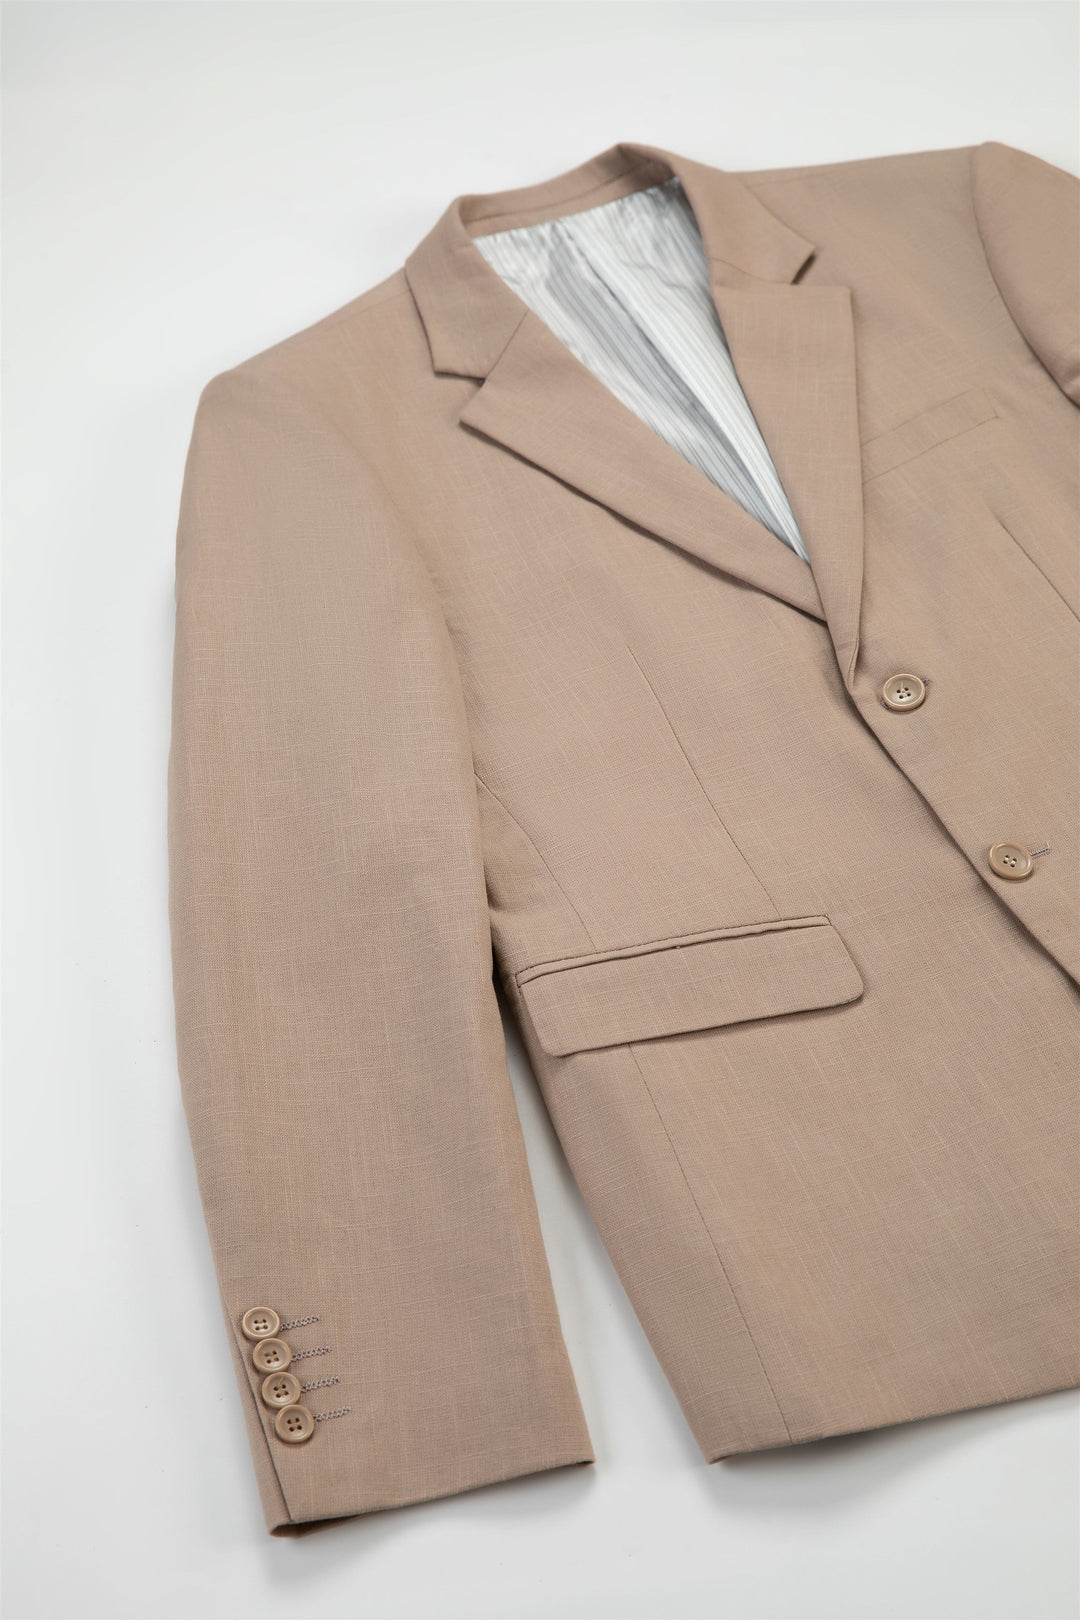 Formal 3 Pieces Mens Suit Flat Linen Notch Lapel Suit(Blazer+Vest+Pants) mens event wear